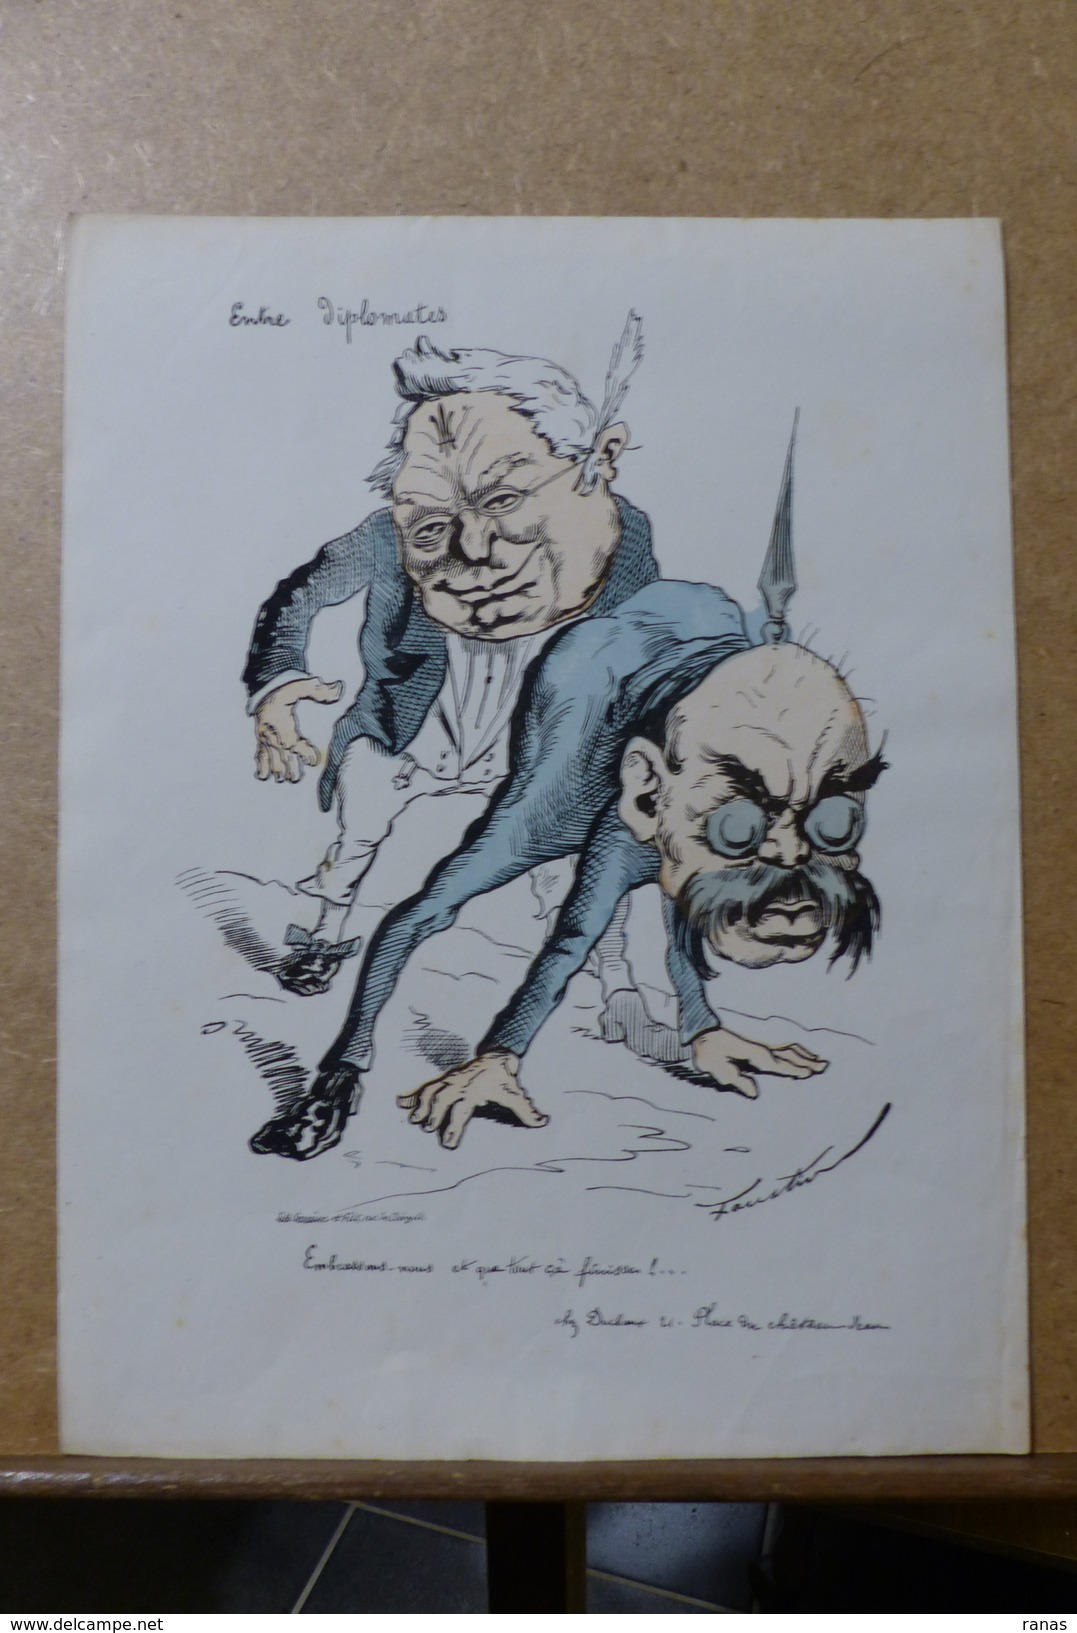 Estampe Gravure Satirique Caricature D'époque 1870  Bismarck Thiers Faustin 36 X 27,5 - Estampas & Grabados